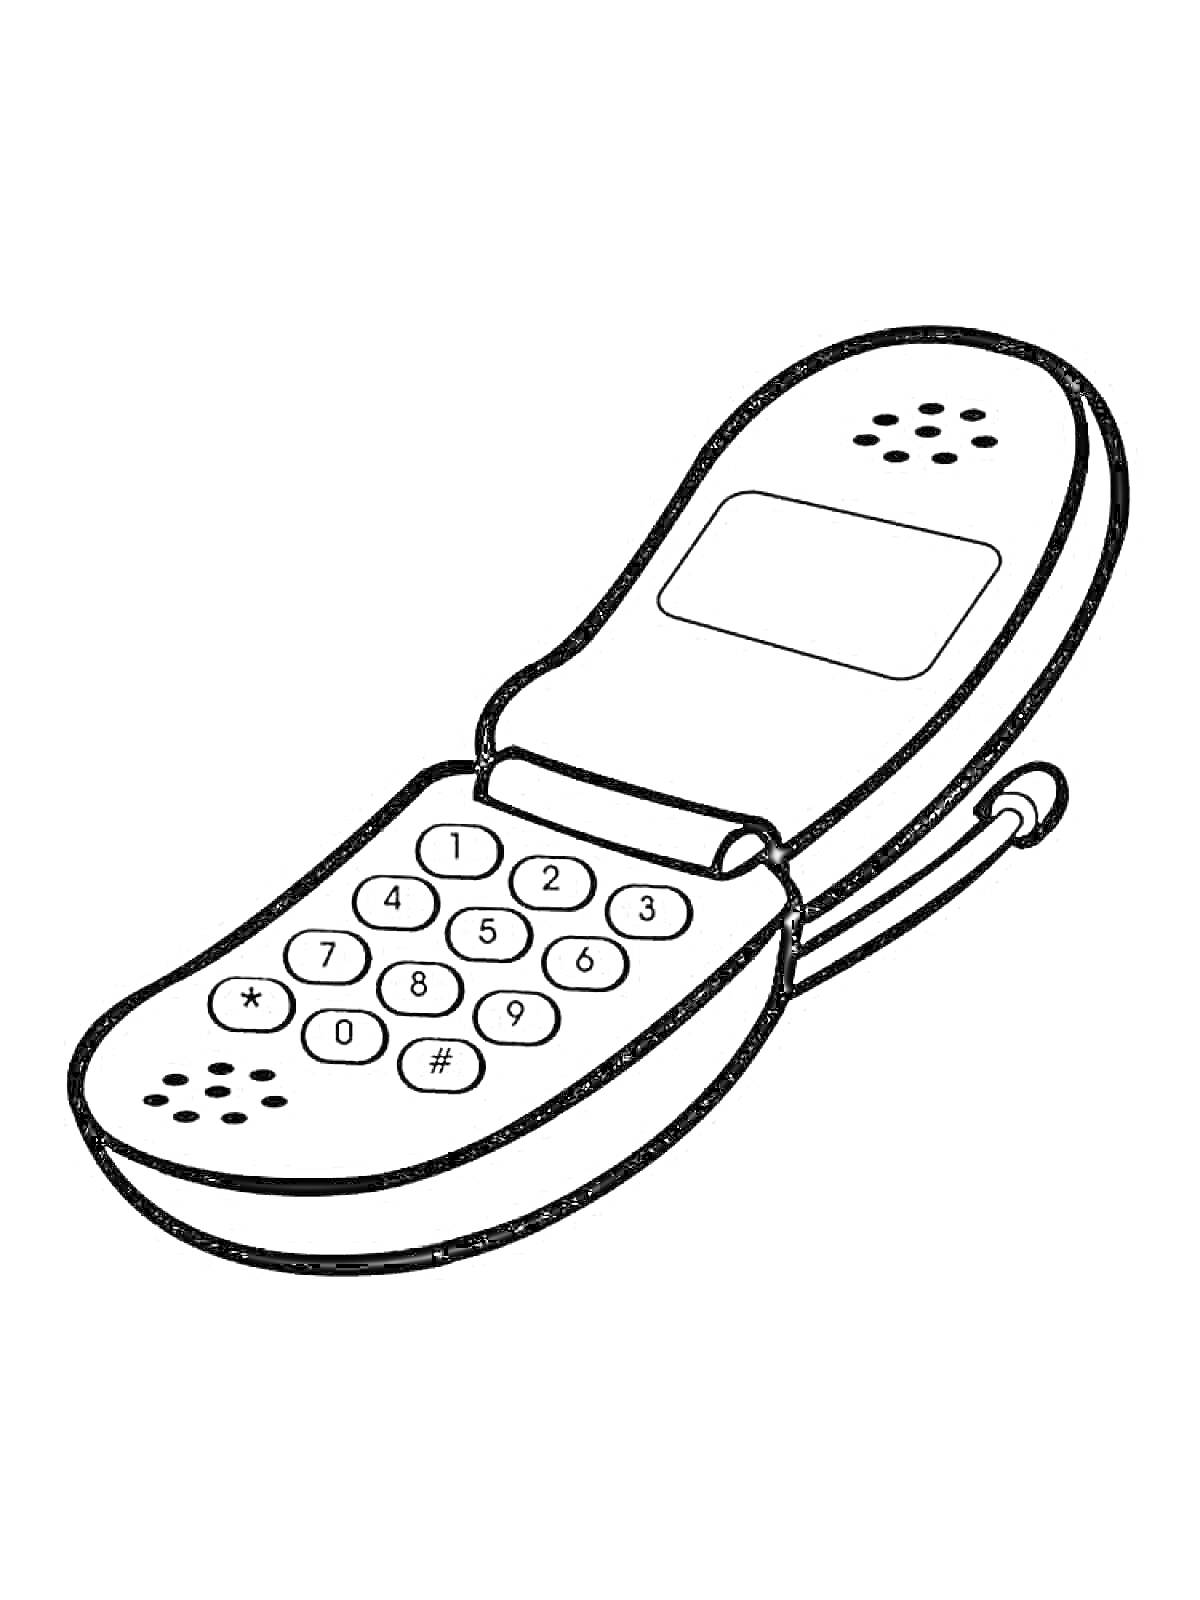 раскладной телефон с клавишами, экраном и антенной